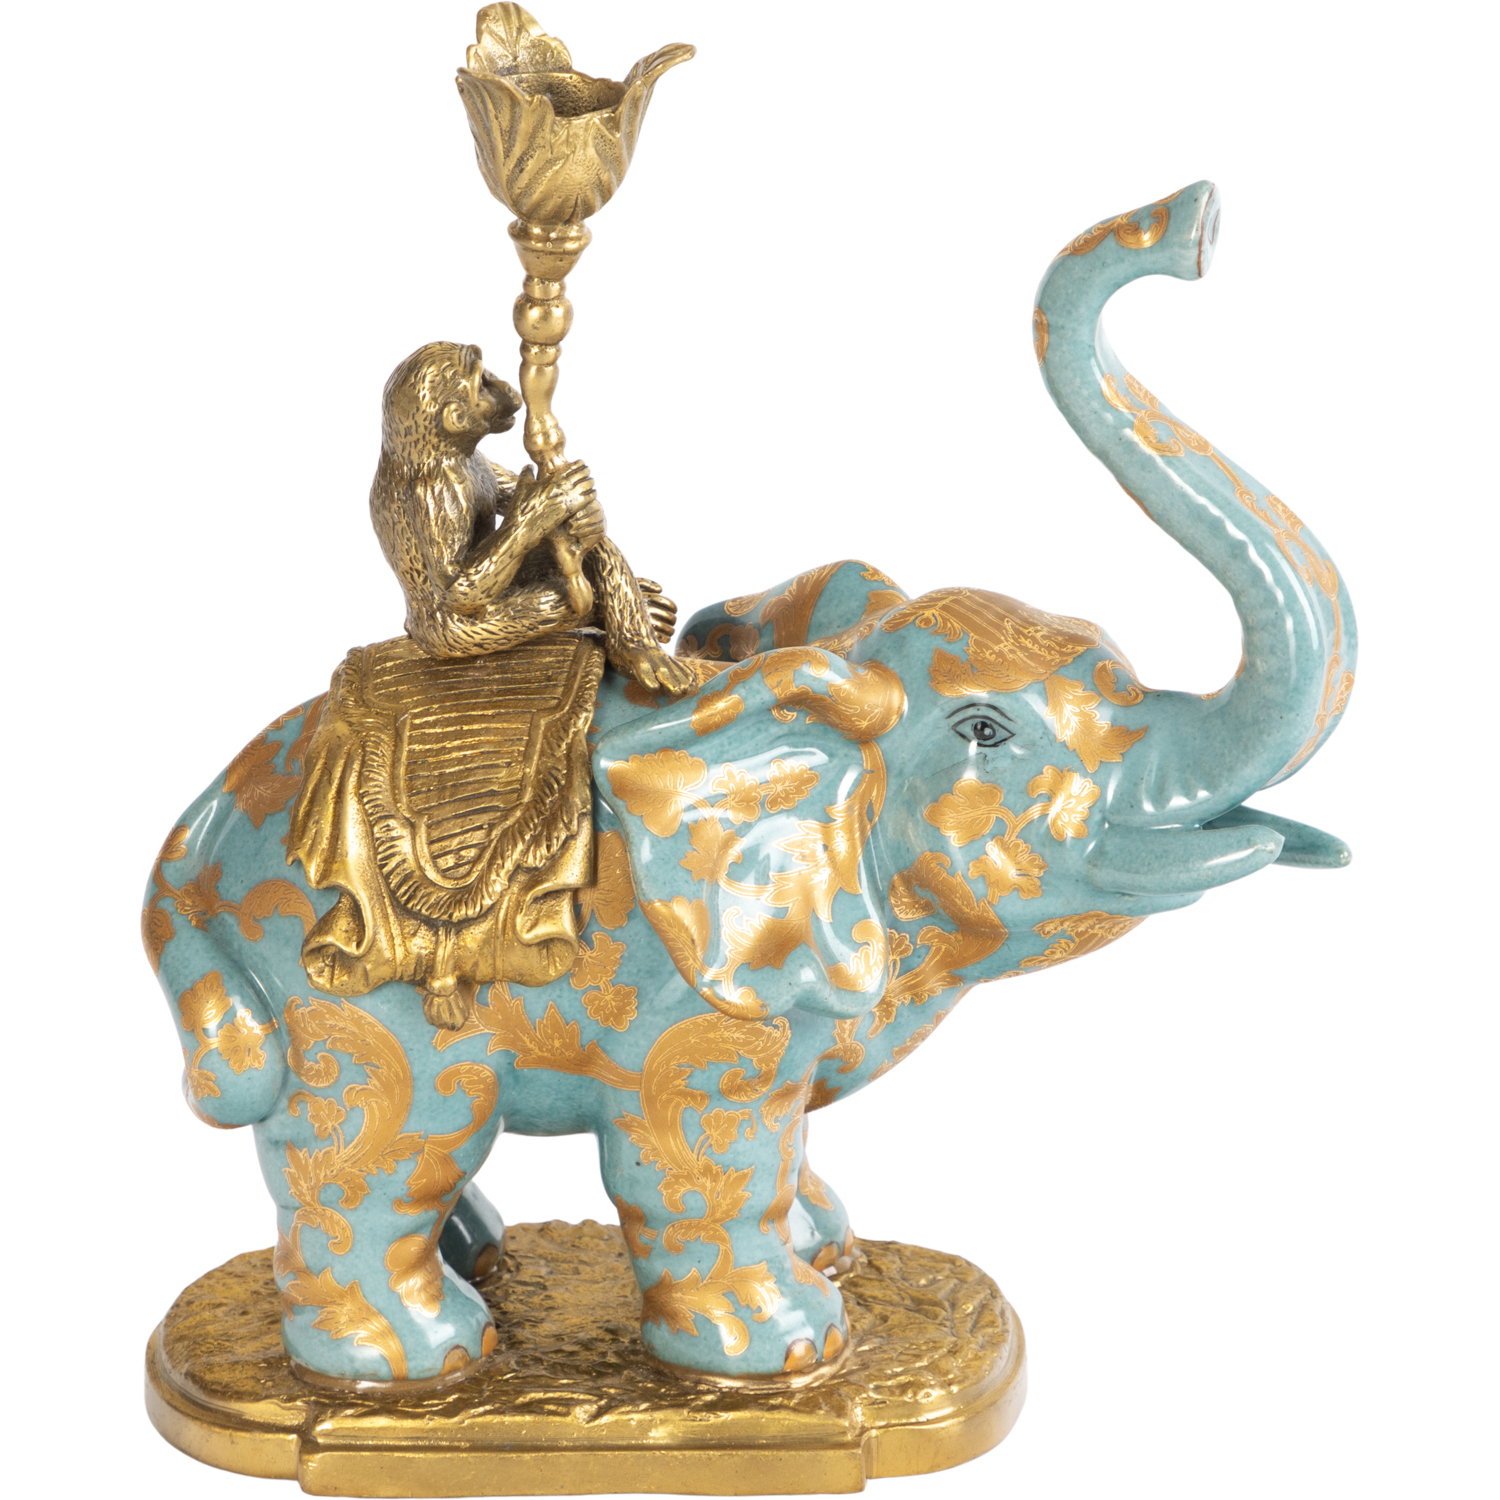 сувенир полистоун подсвечник зеркальные вставки индийский слон на камне 12 5х6 5х3 см Подсвечник Glasar голубой слон 22х9х23 см